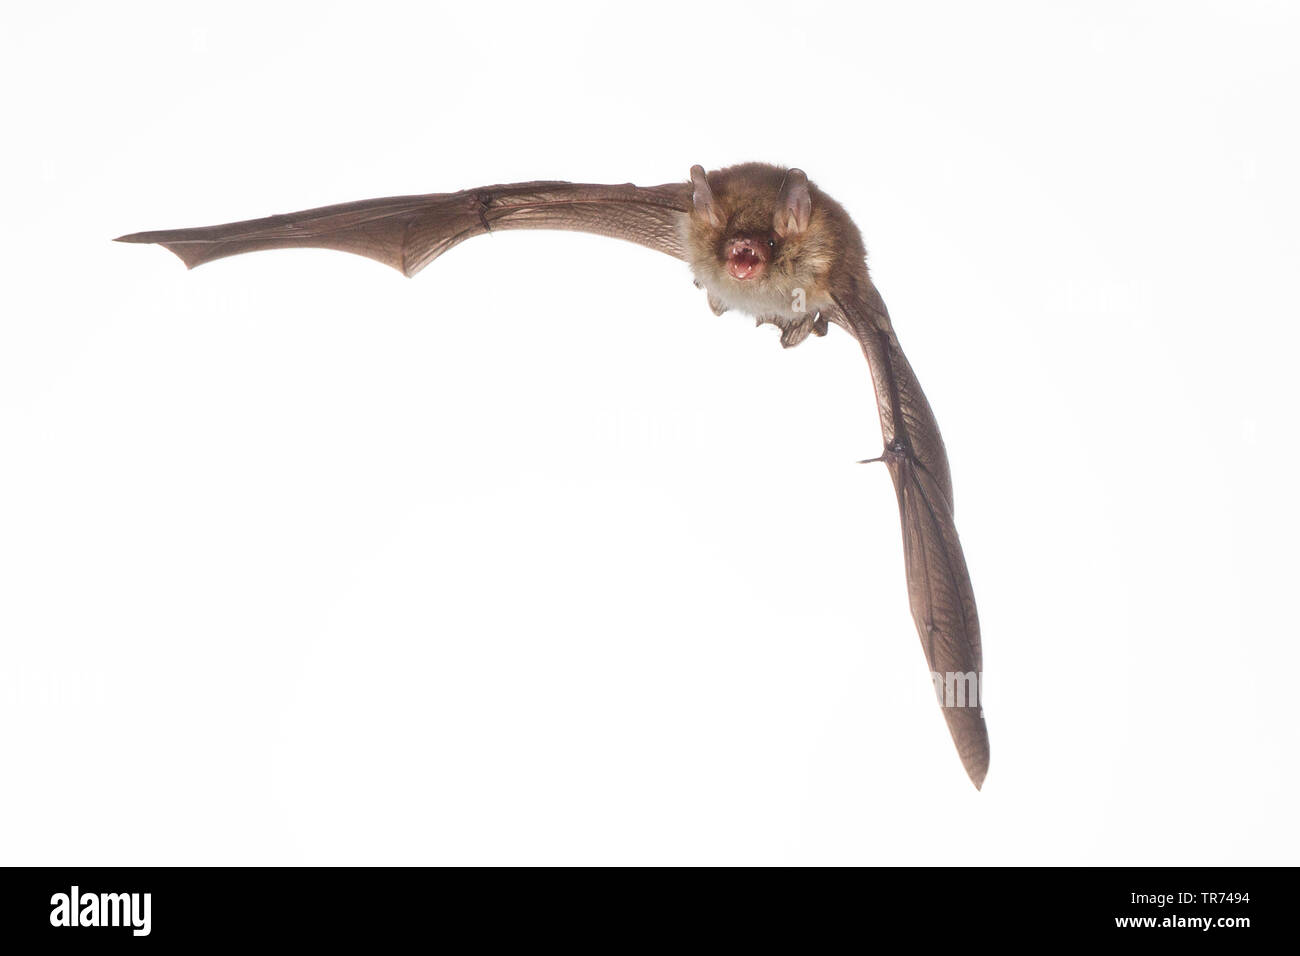 Natterer's bat (Myotis nattereri), flying, cutout, Netherlands Stock Photo